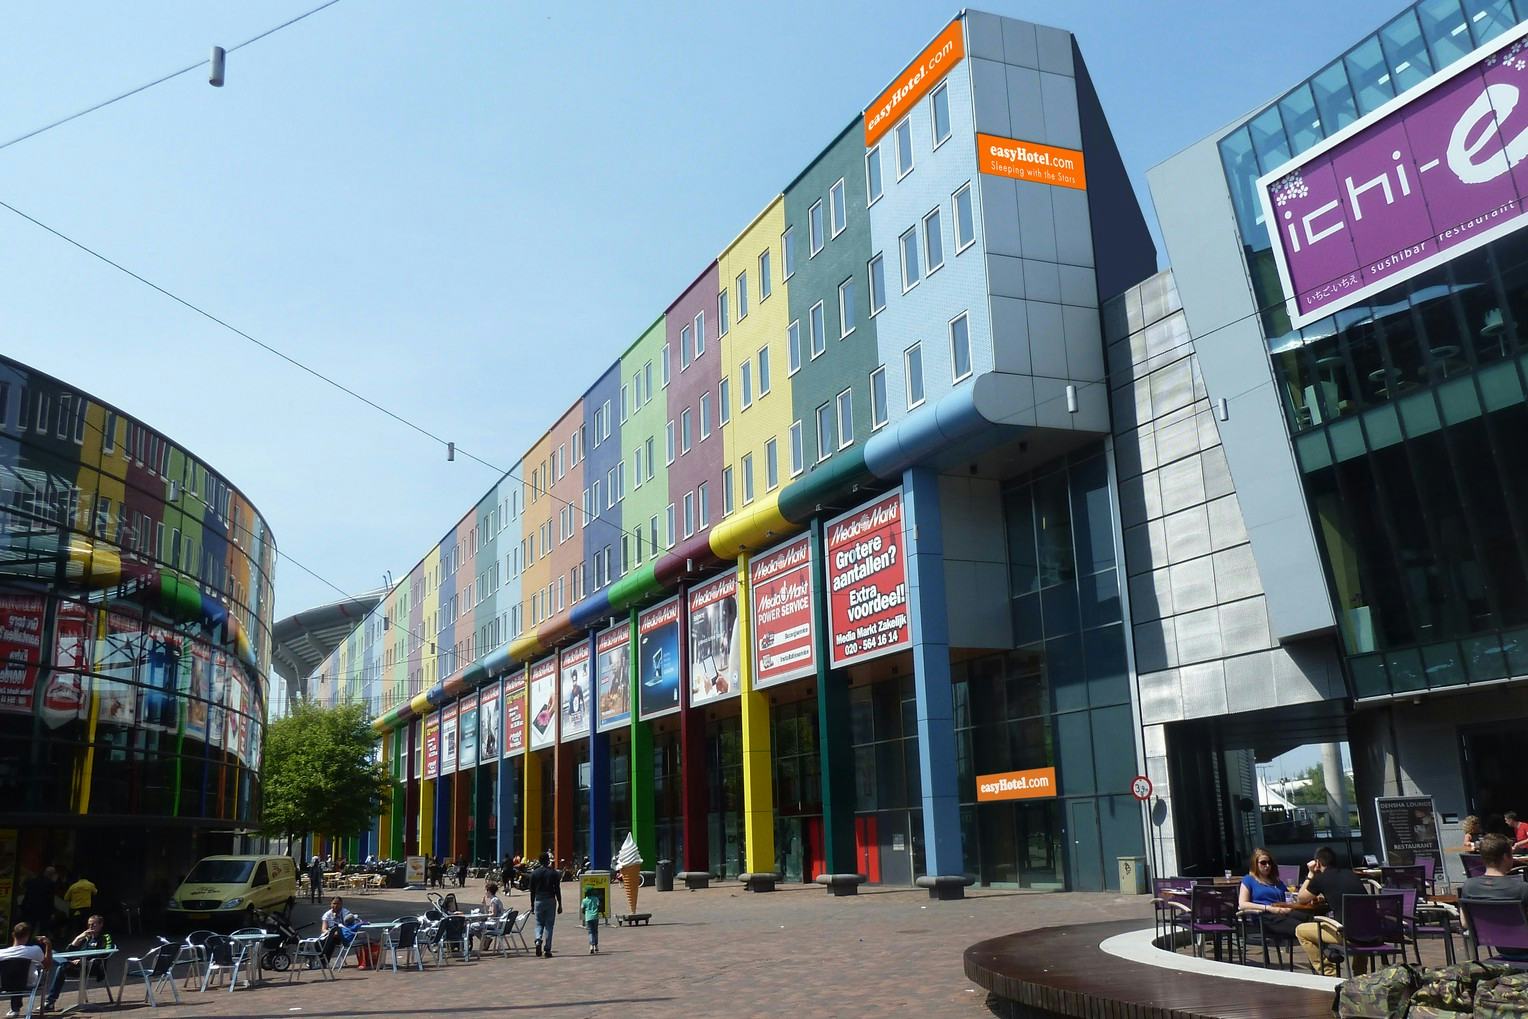 Danzep bouwt easyHotel bij Arena en in Brussel